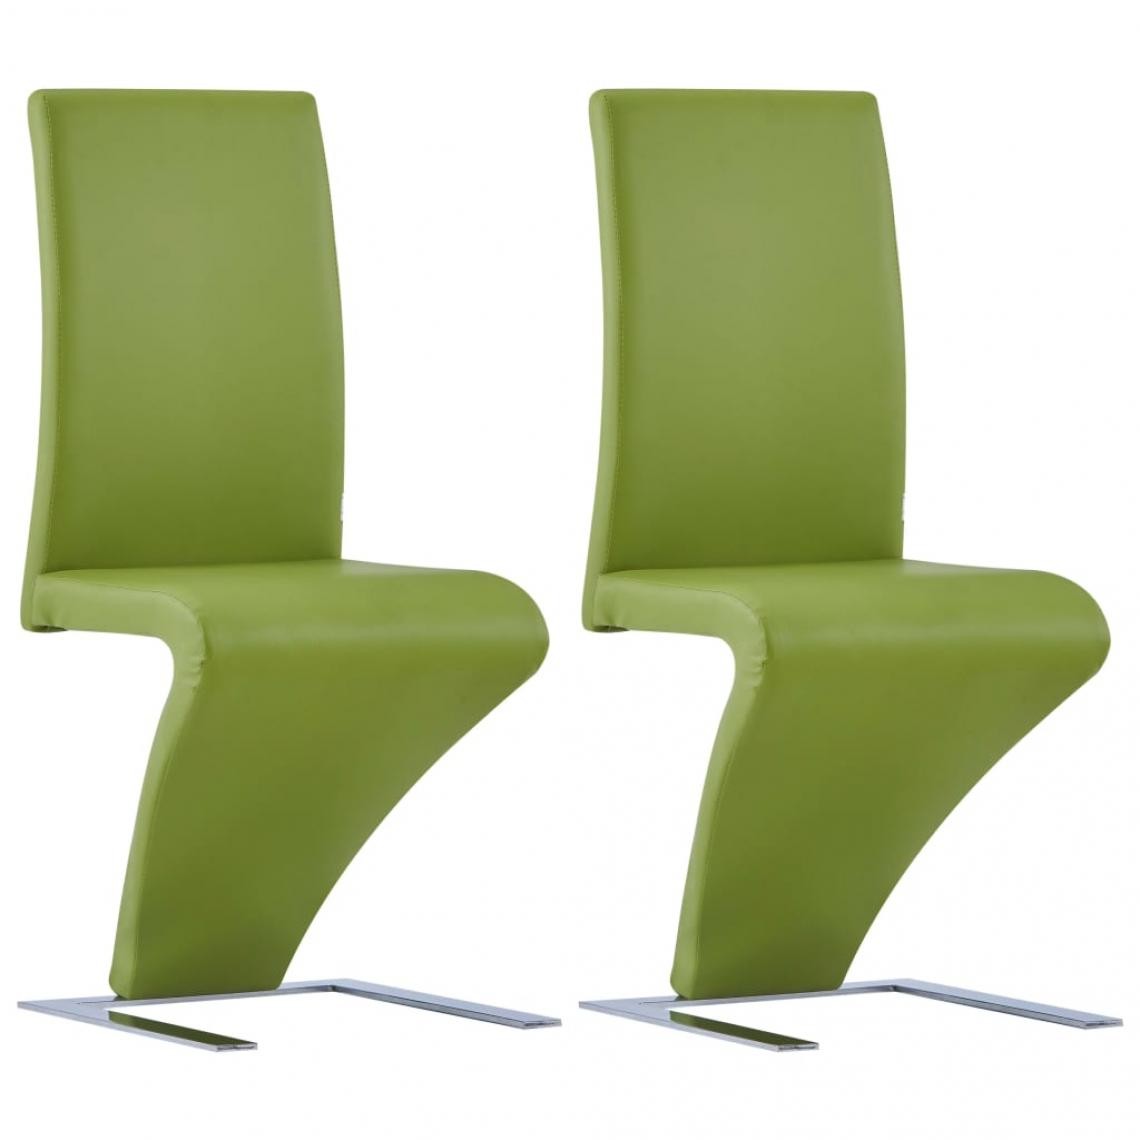 Decoshop26 - Lot de 2 chaises de salle à manger cuisine zigzag design contemporain similicuir vert CDS021161 - Chaises